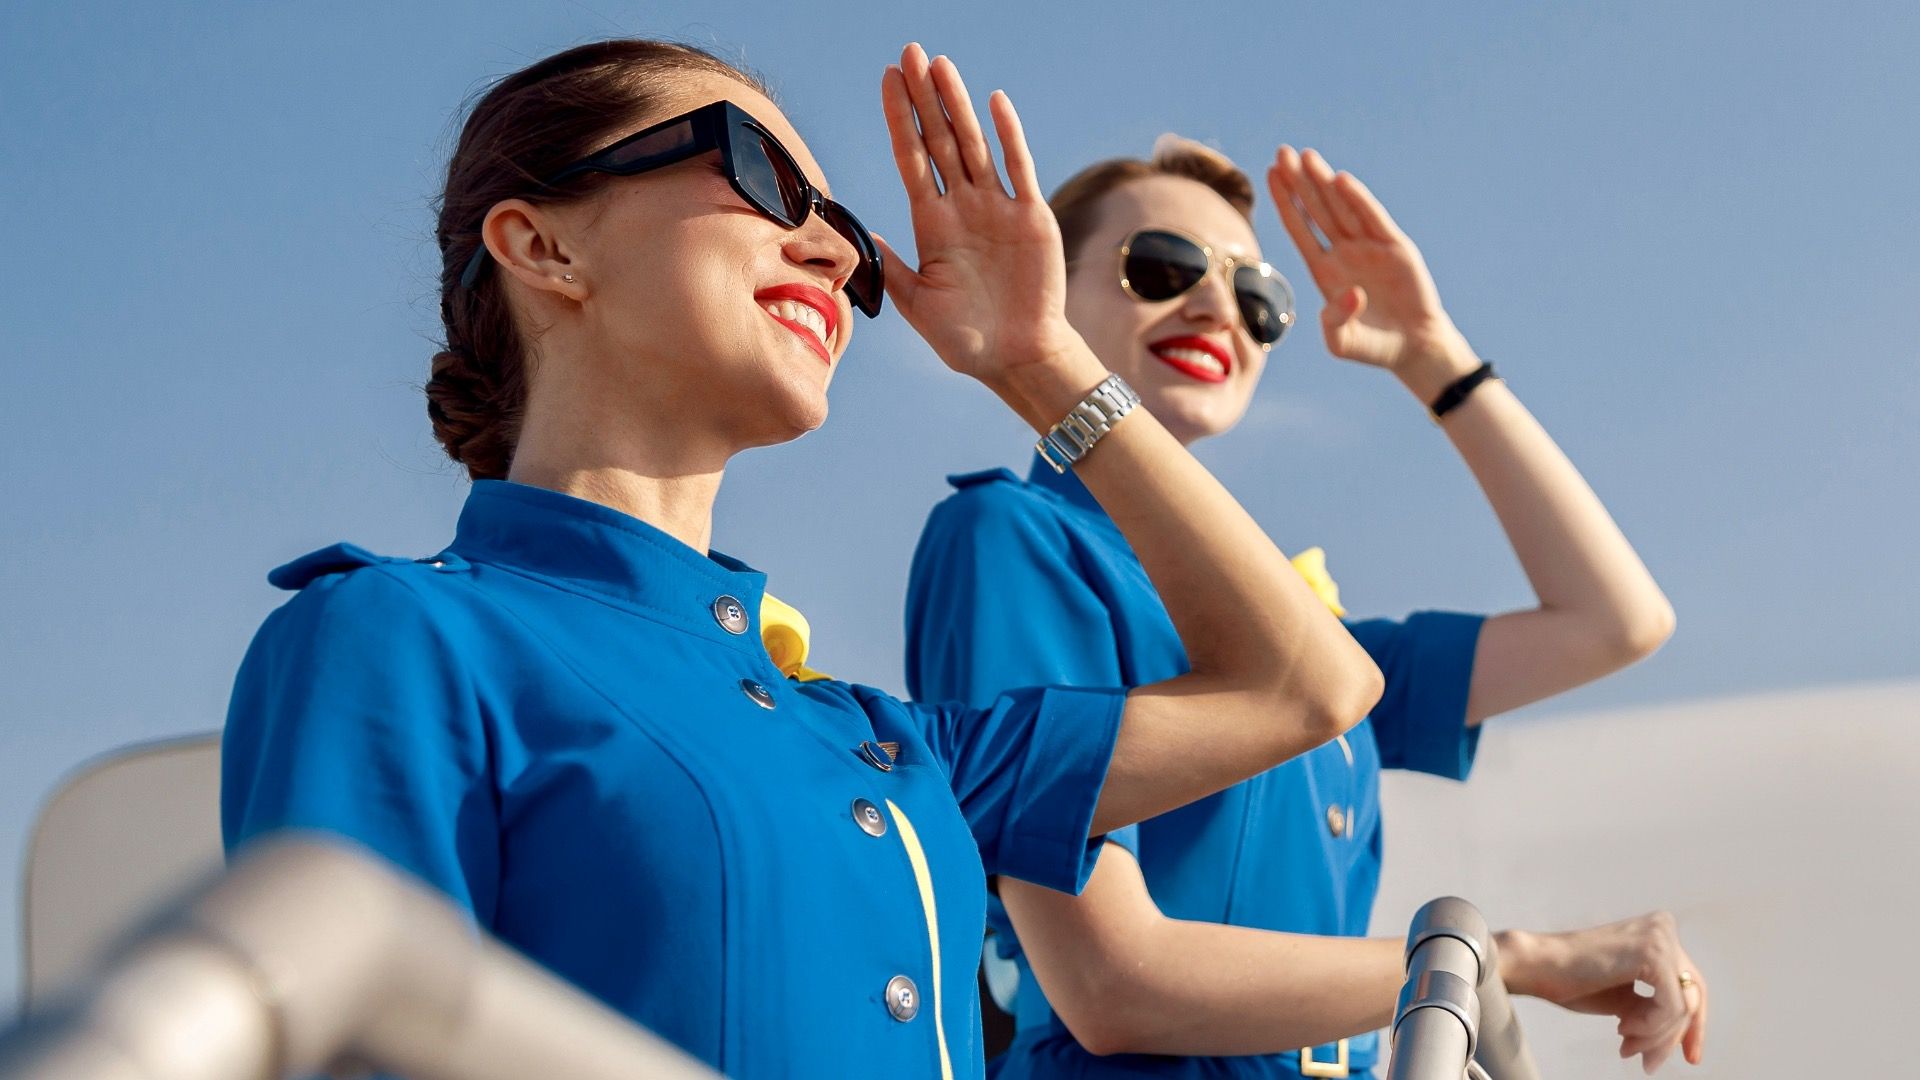 Flight attendants pose outside in uniform 